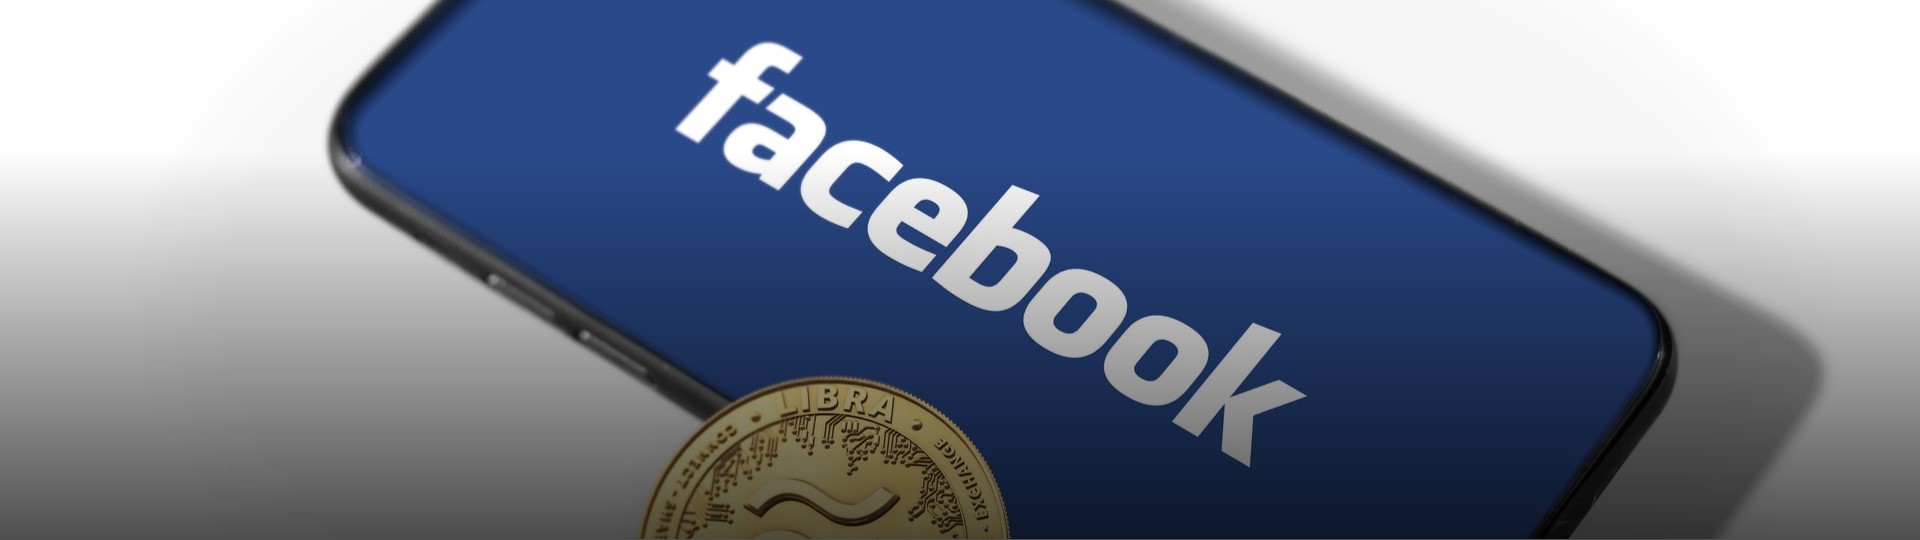 Facebook přejmenoval svoji kryptoměnu. Bude se jmenovat diem